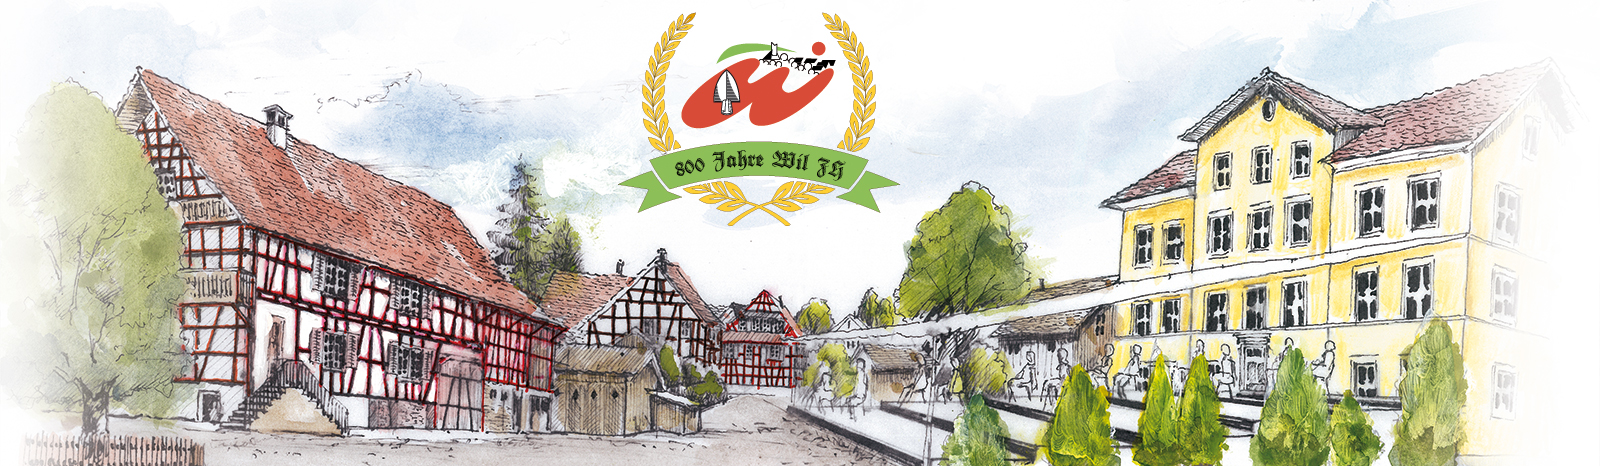 Bild Dorf Wil und Logo Jubiläum